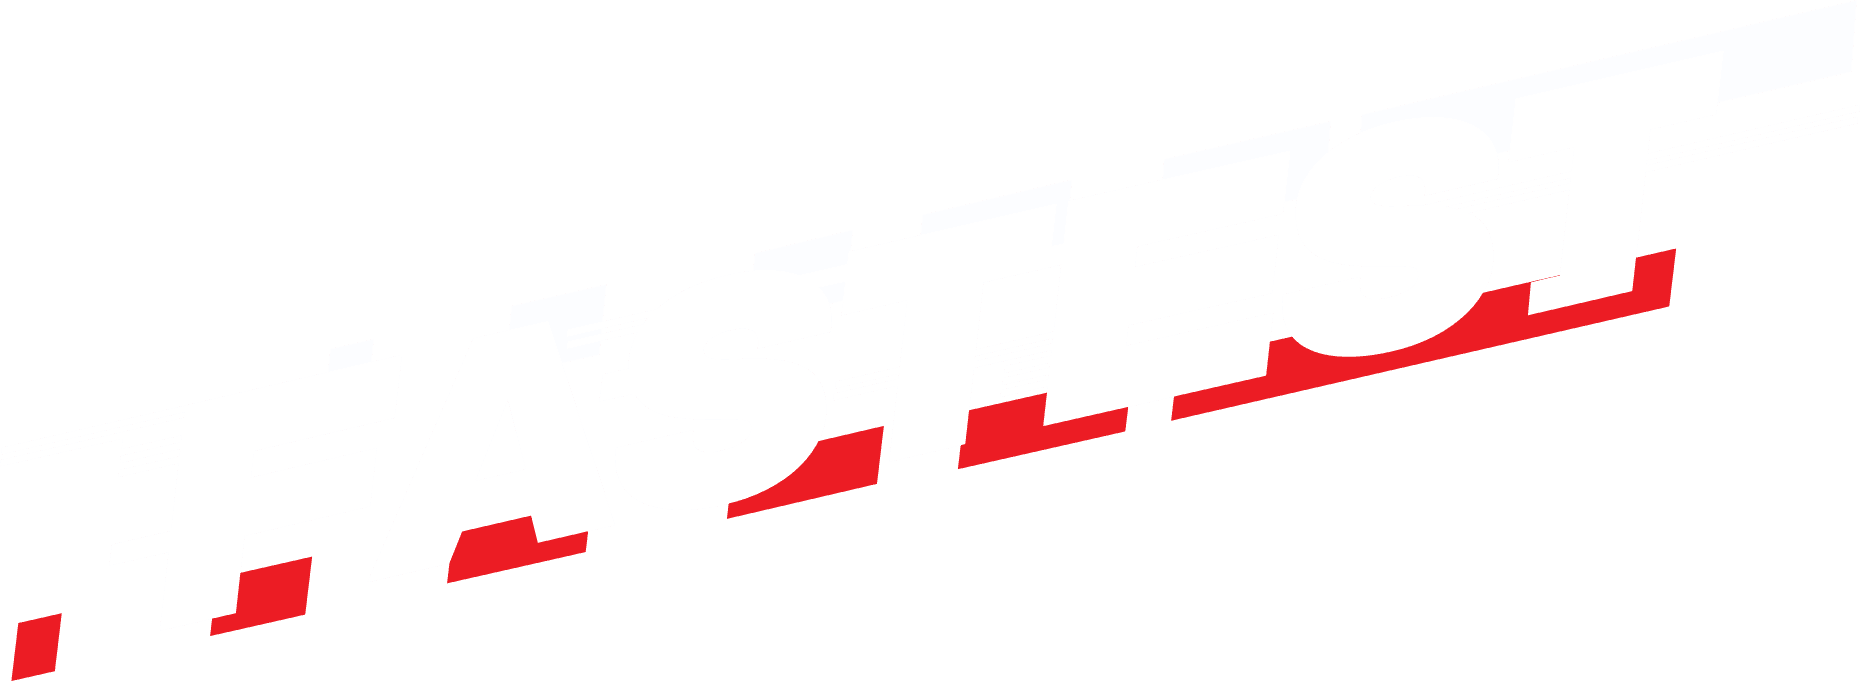 Fastest logo